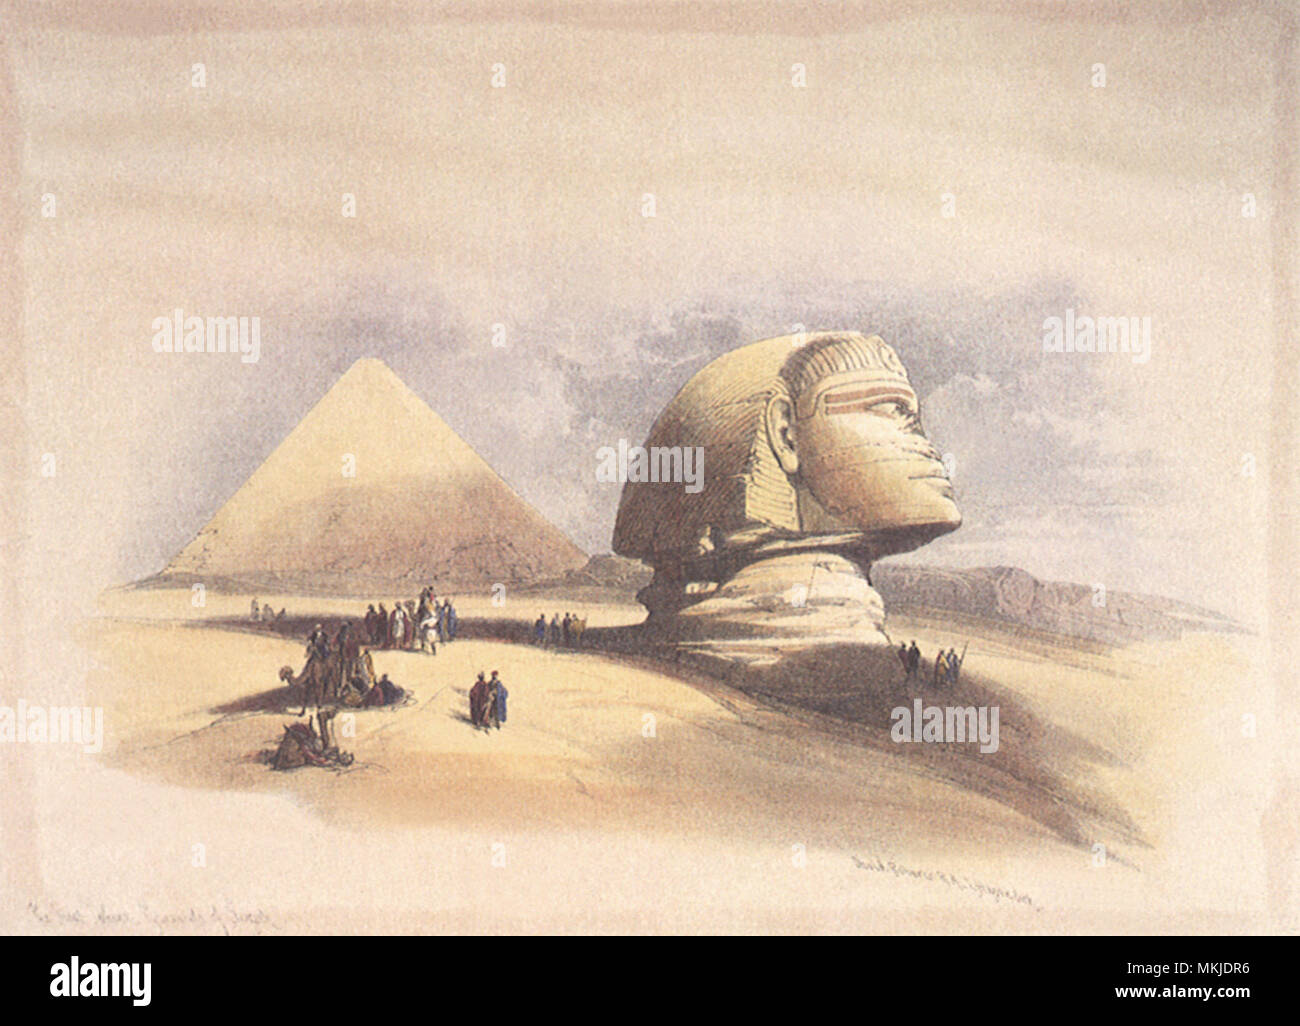 Great Sphinx 1846 Stock Photo